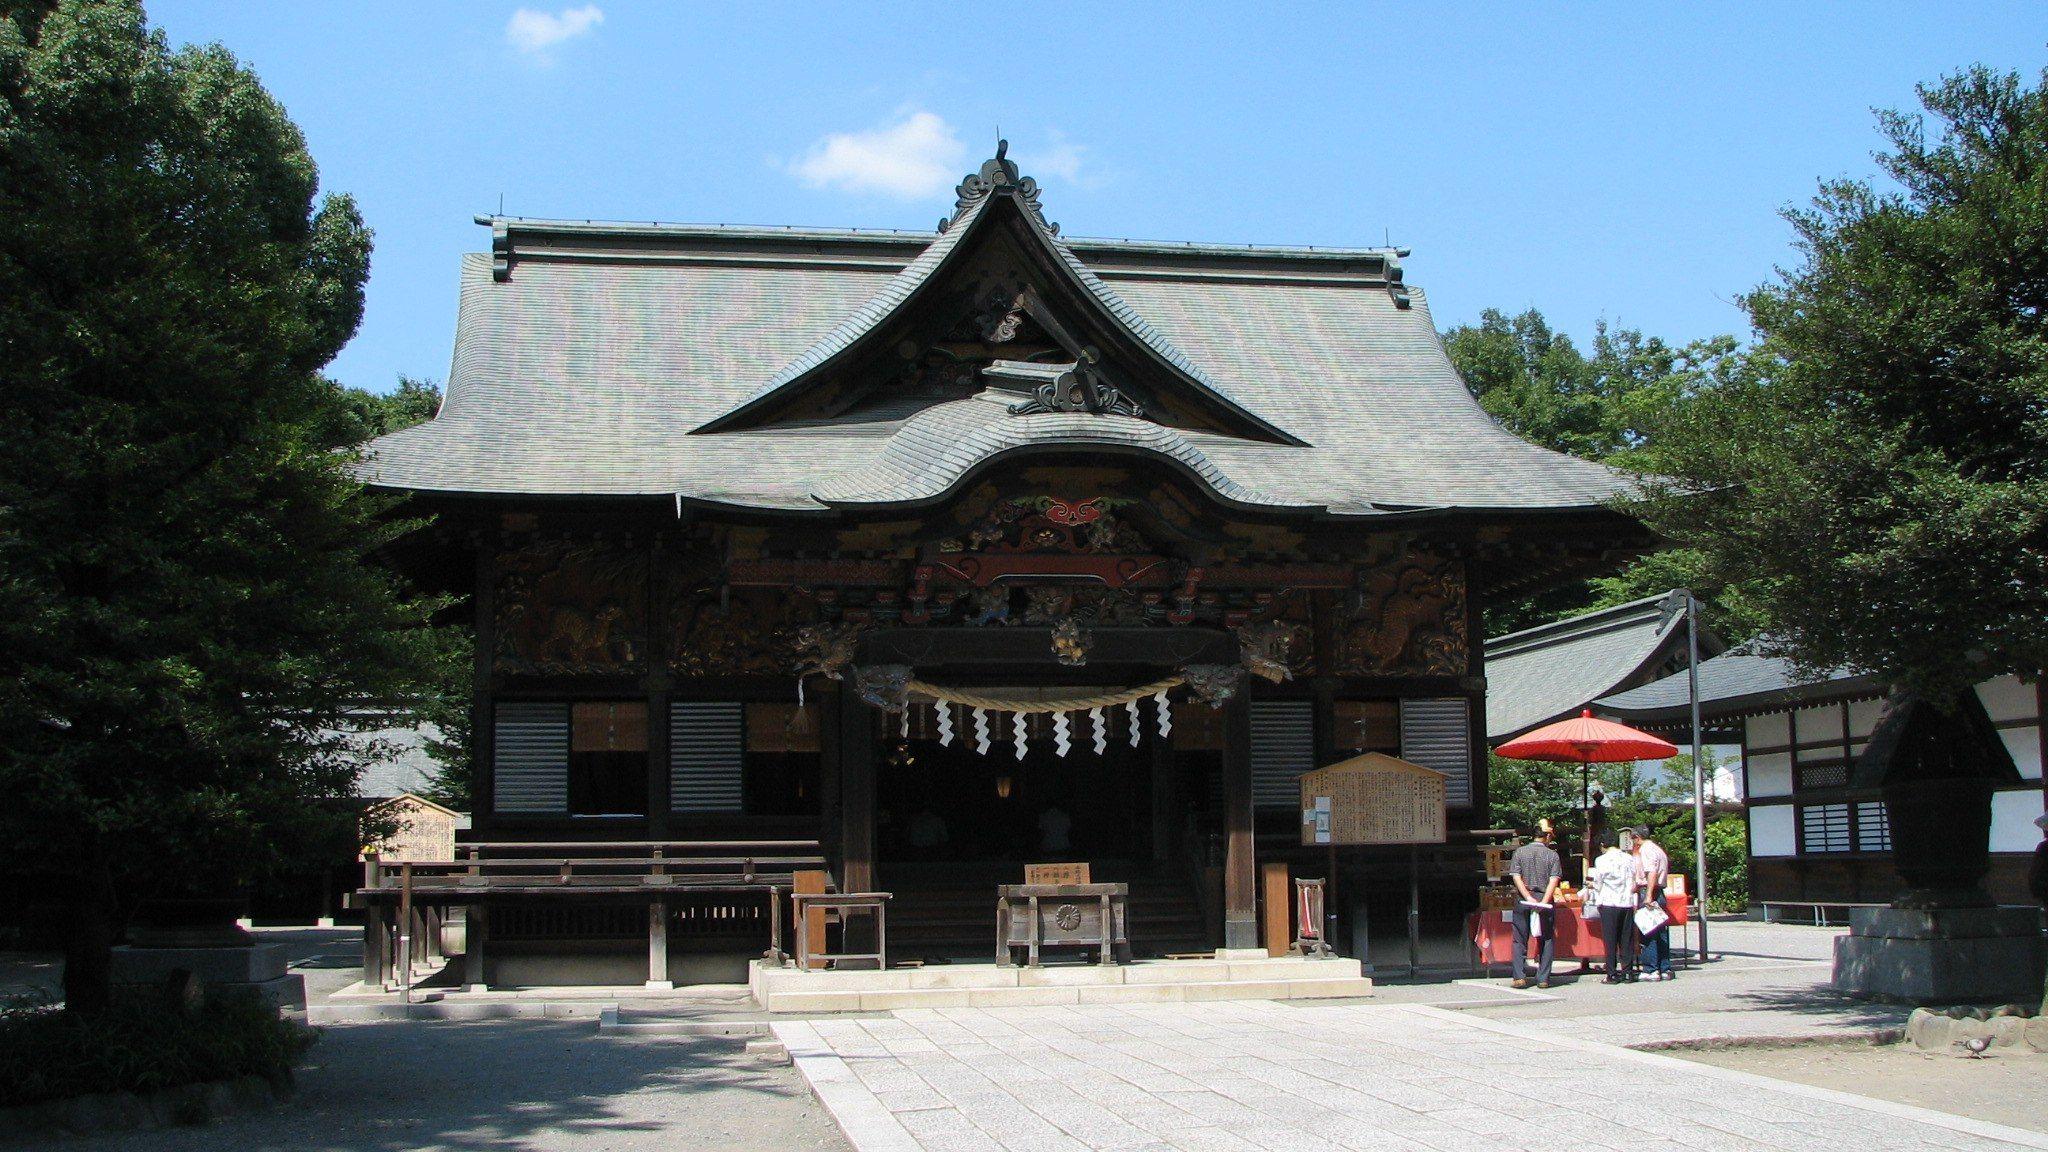 Haiden of Chichibu Shrine, Chichibu, Saitama